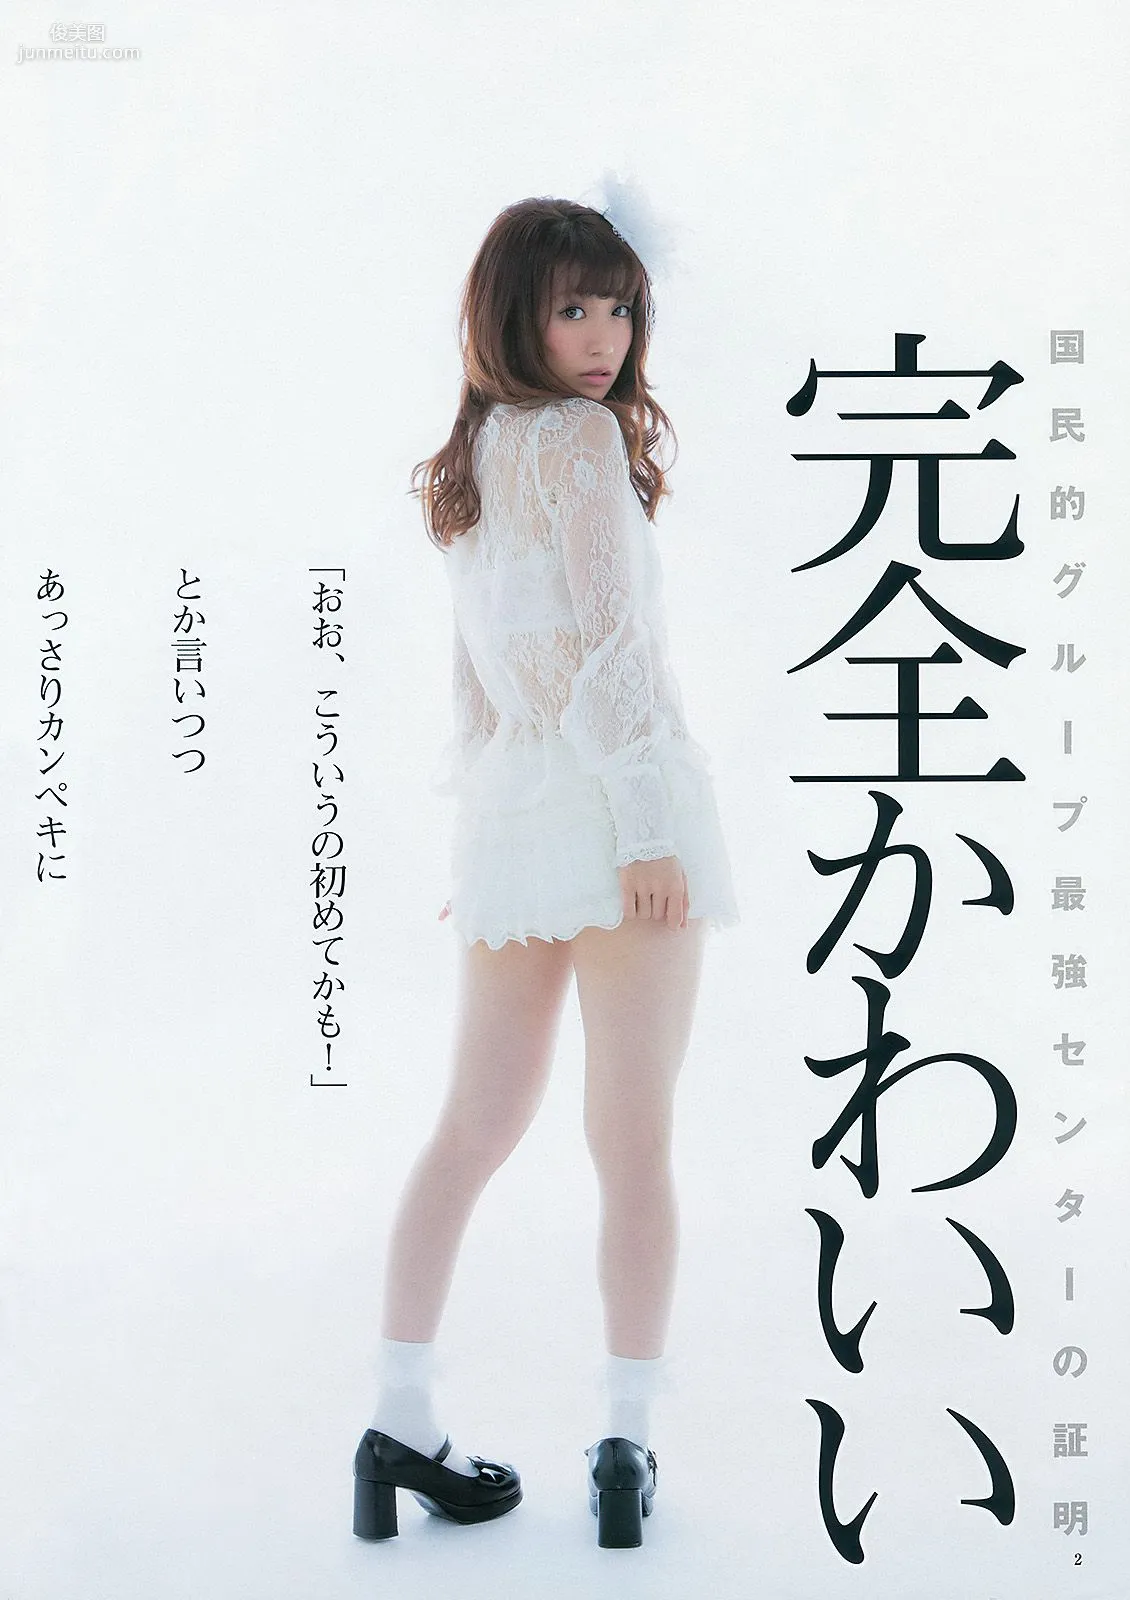 大島優子 乃木坂46 AKB48 ウェイティングガールズ [Weekly Young Jump] 2012年No.40 写真杂志3